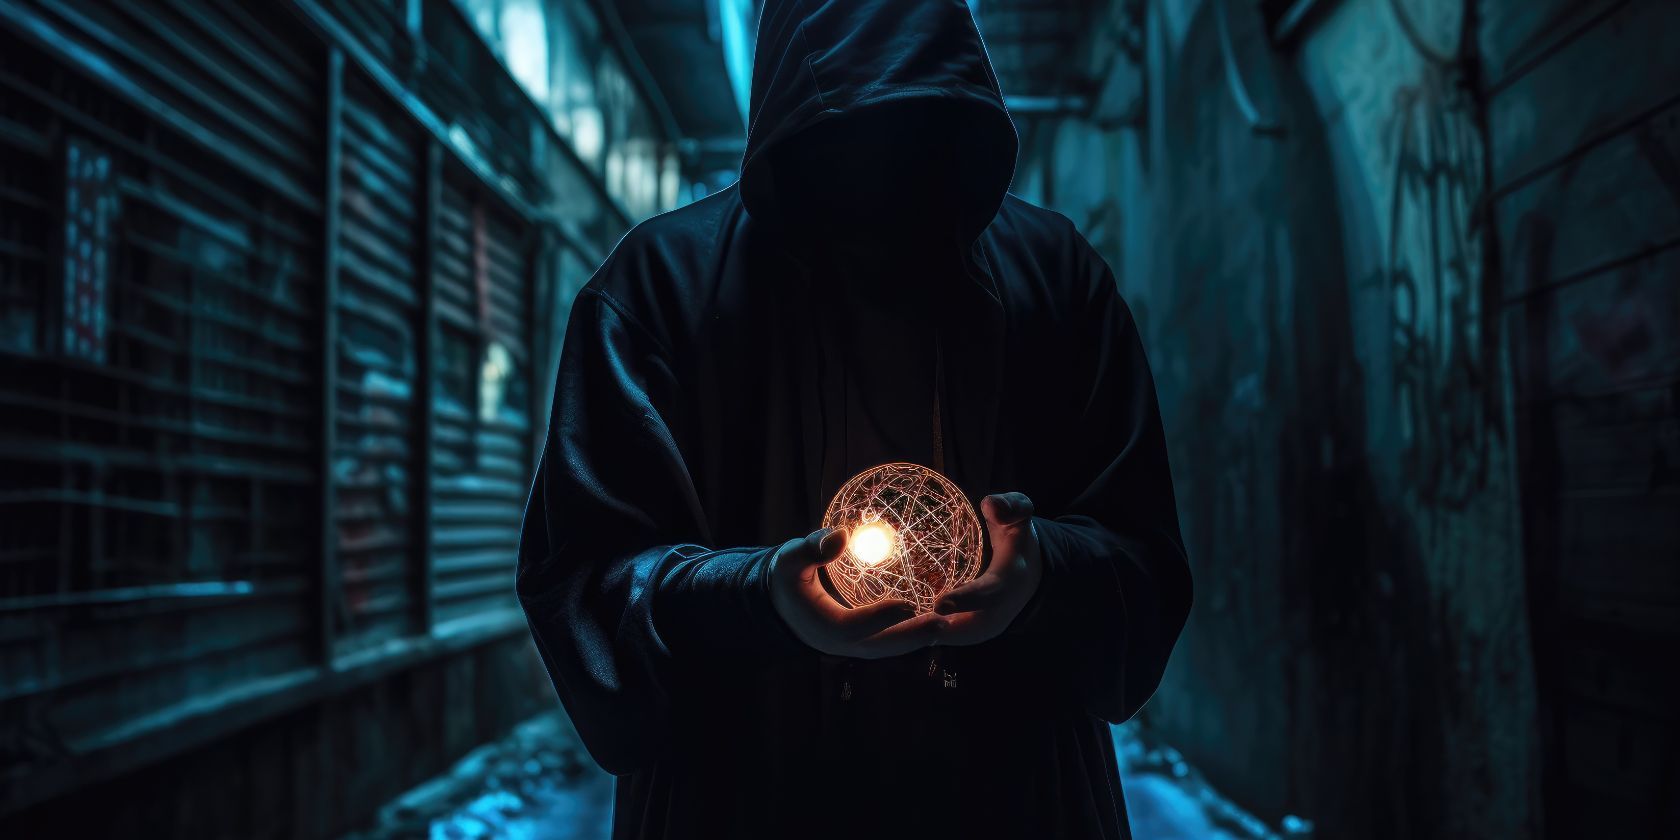 hooded man in dark alley holding spherical light